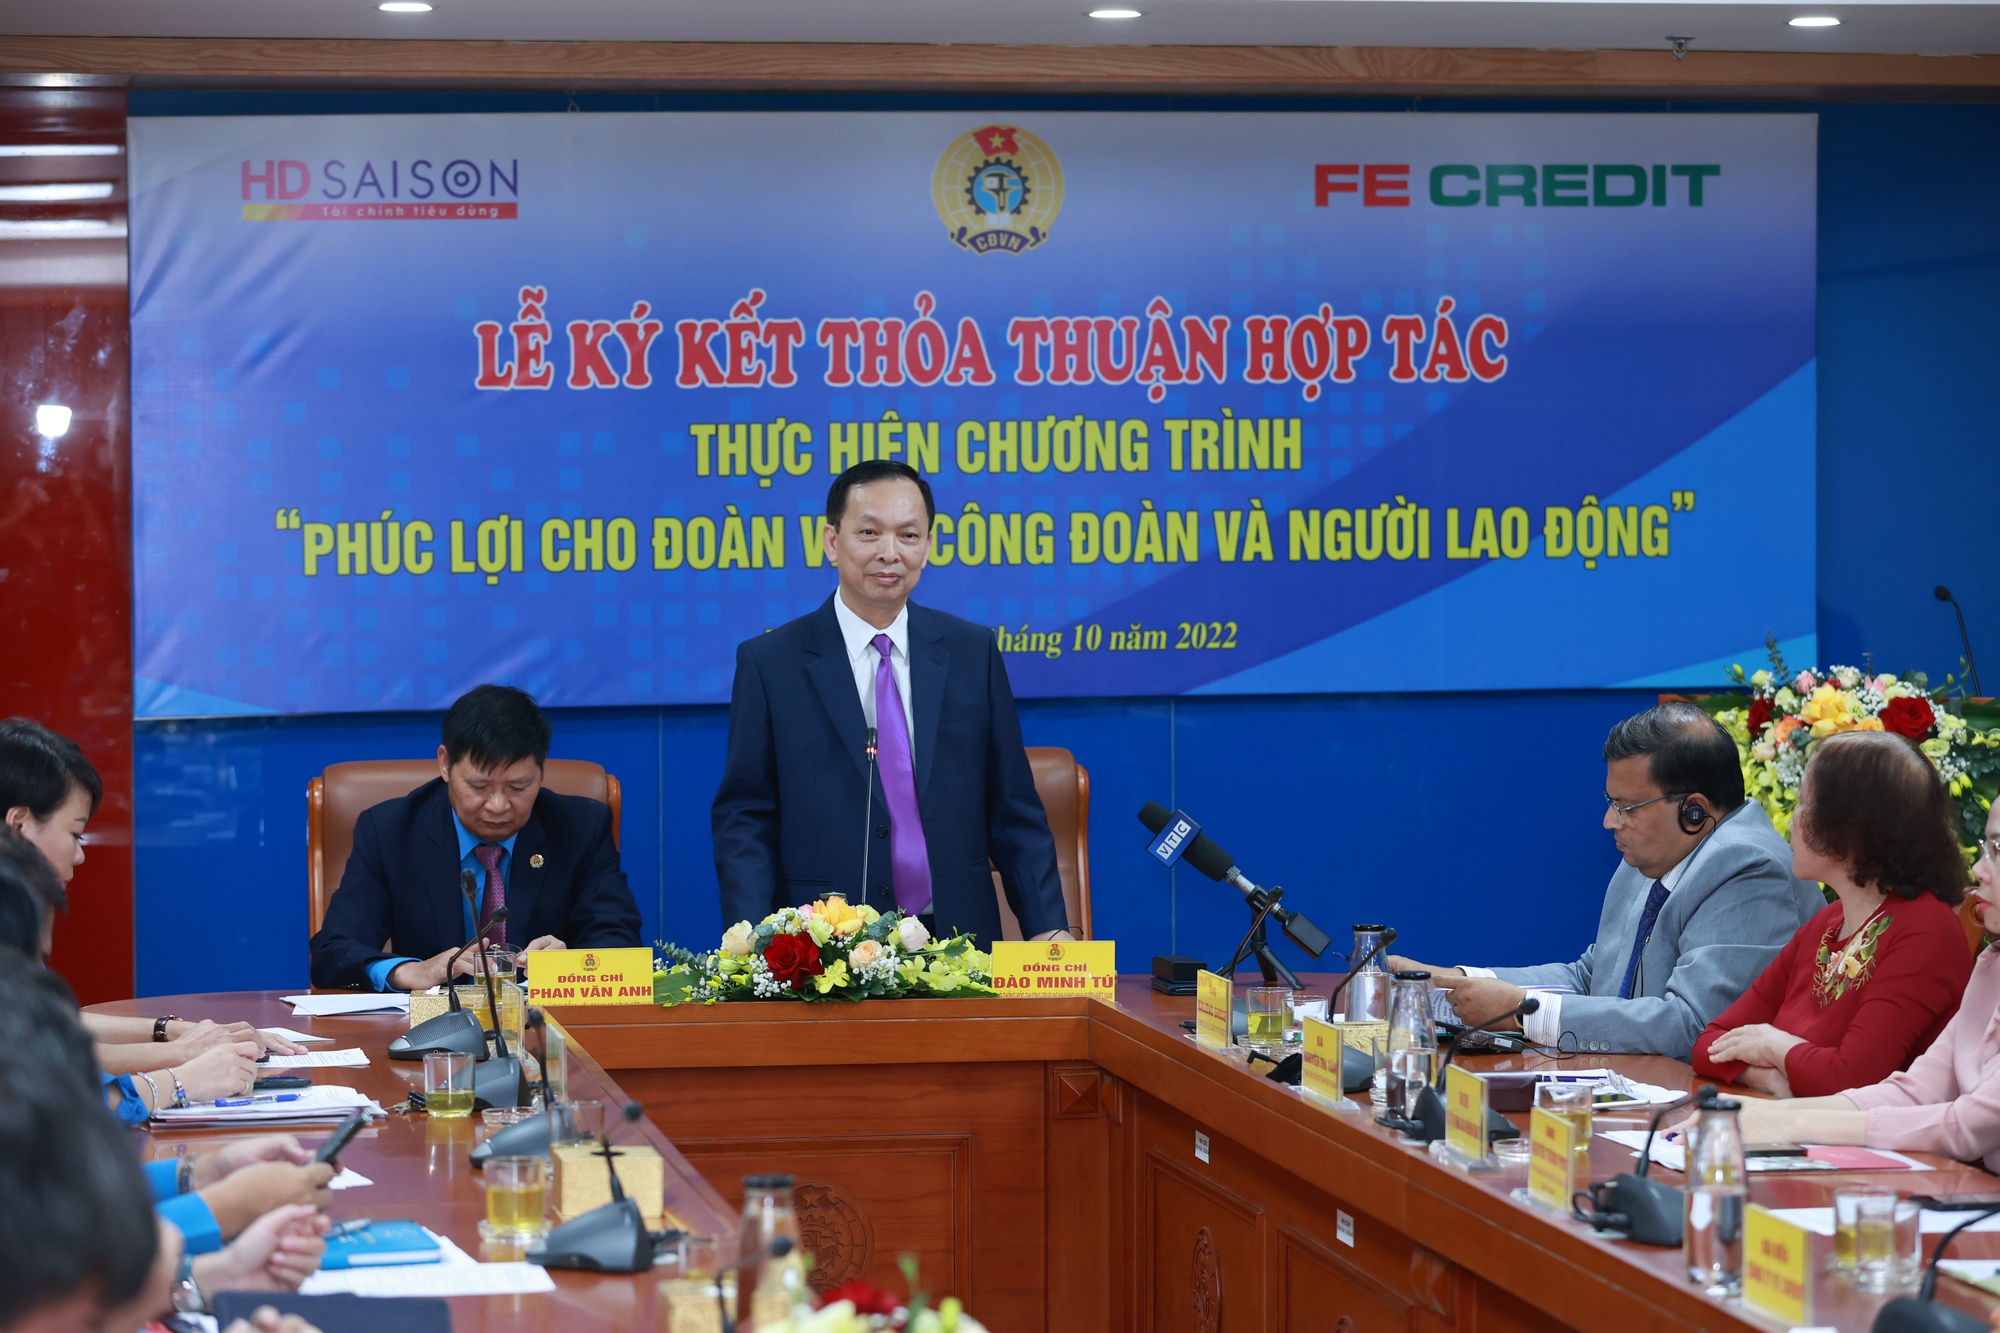 FE CREDIT ký kết thỏa thuận hợp tác cùng Tổng Liên đoàn Lao động Việt Nam - Ảnh 1.